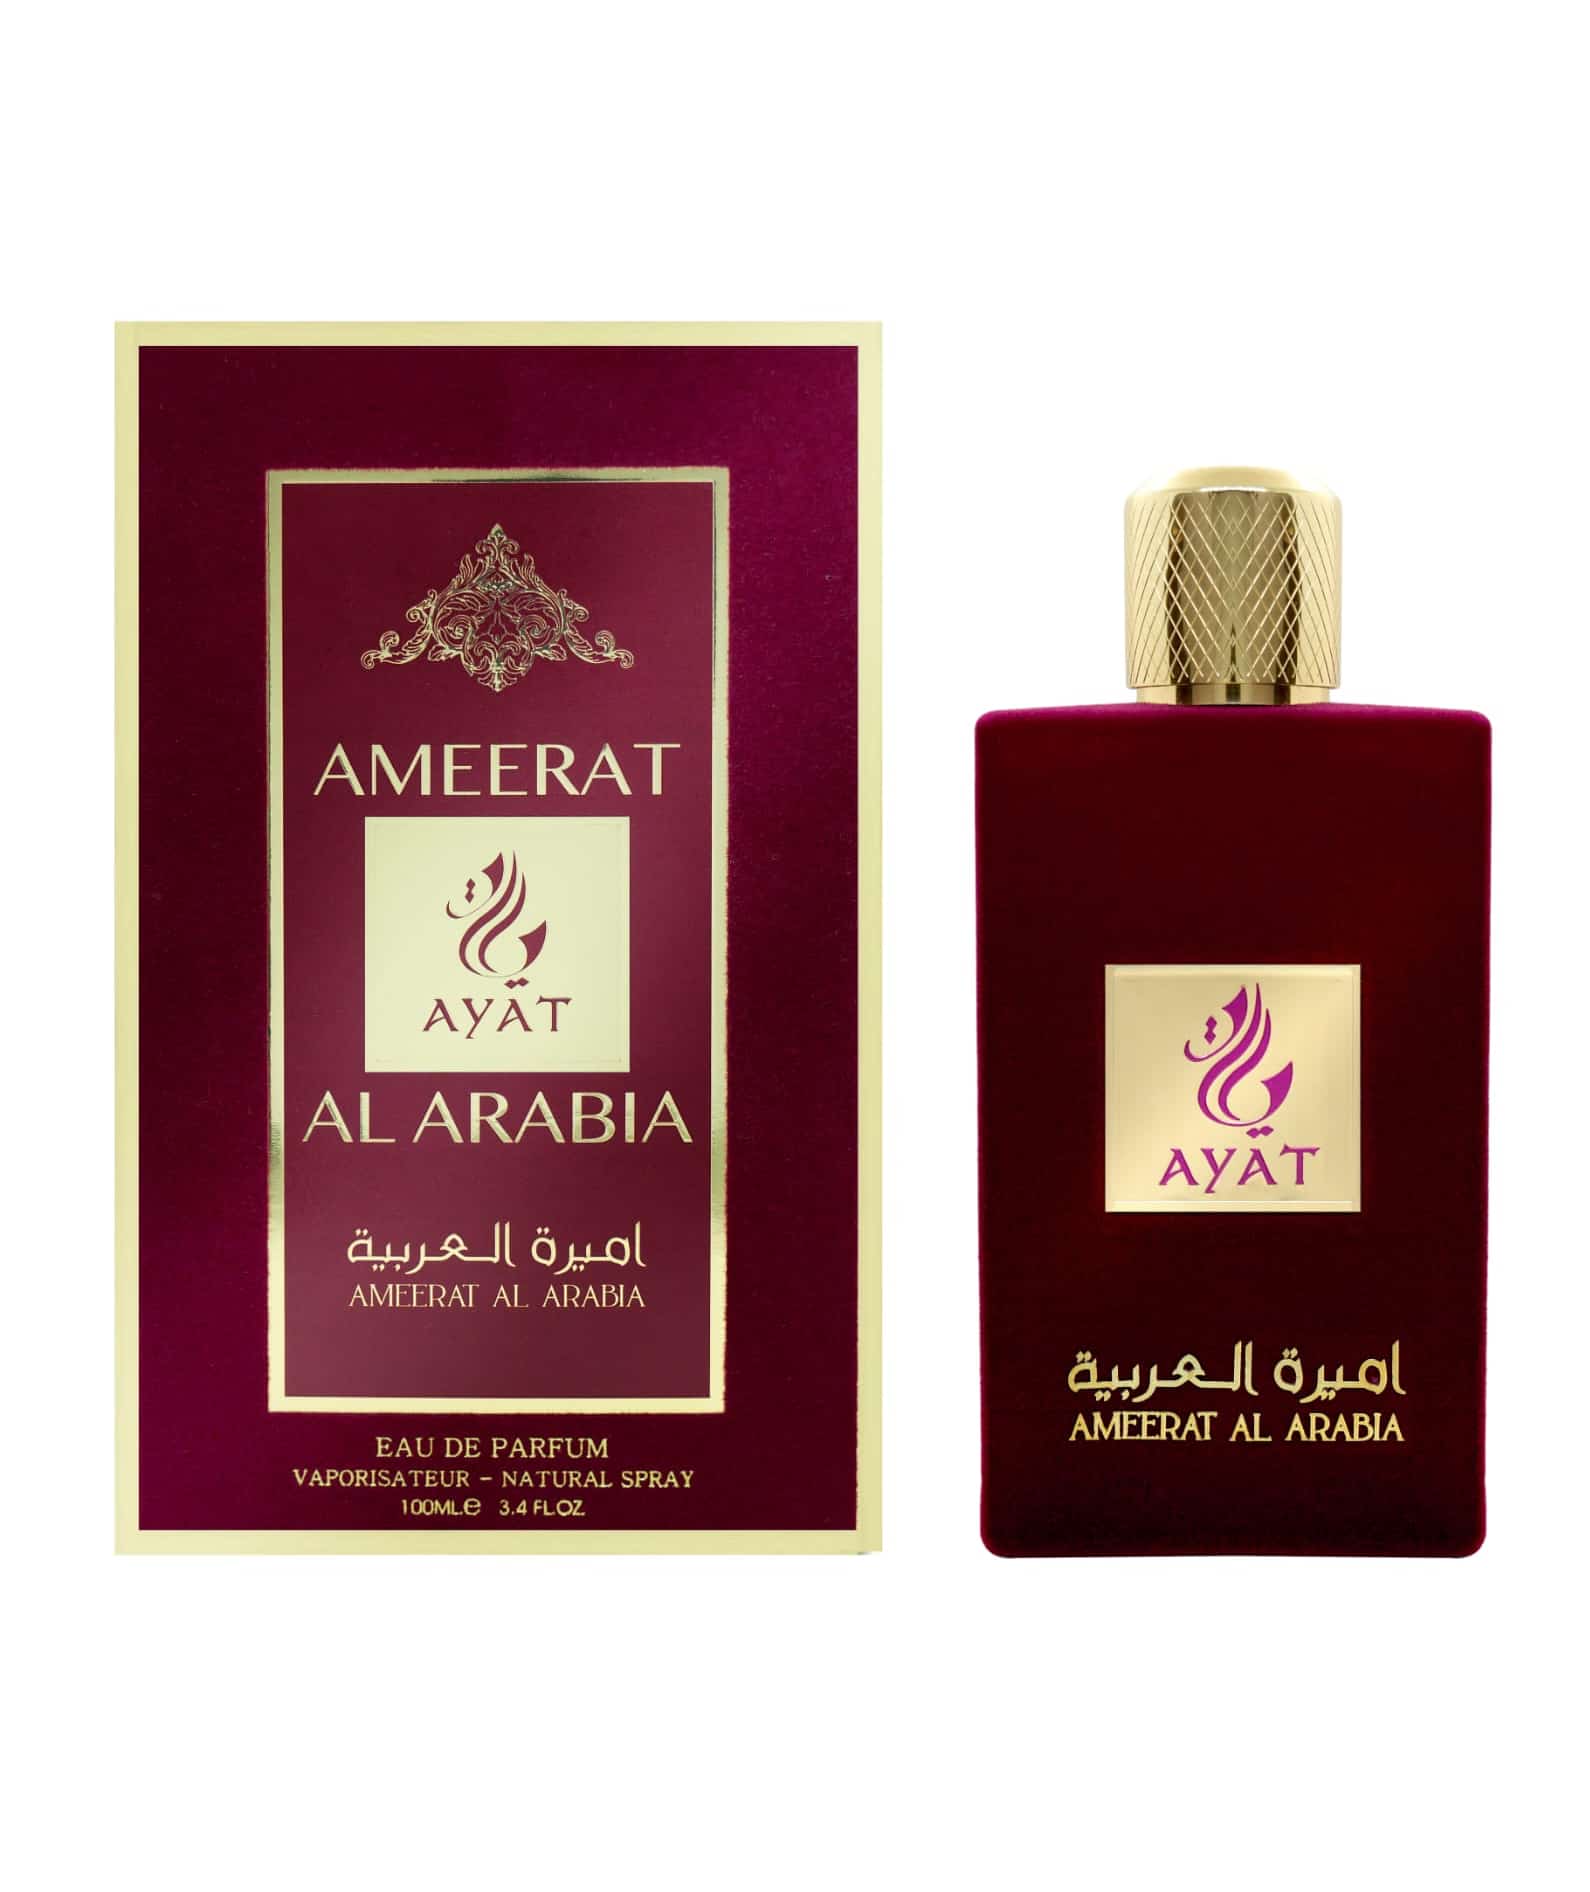 eau de parfum Ameerat al arabia